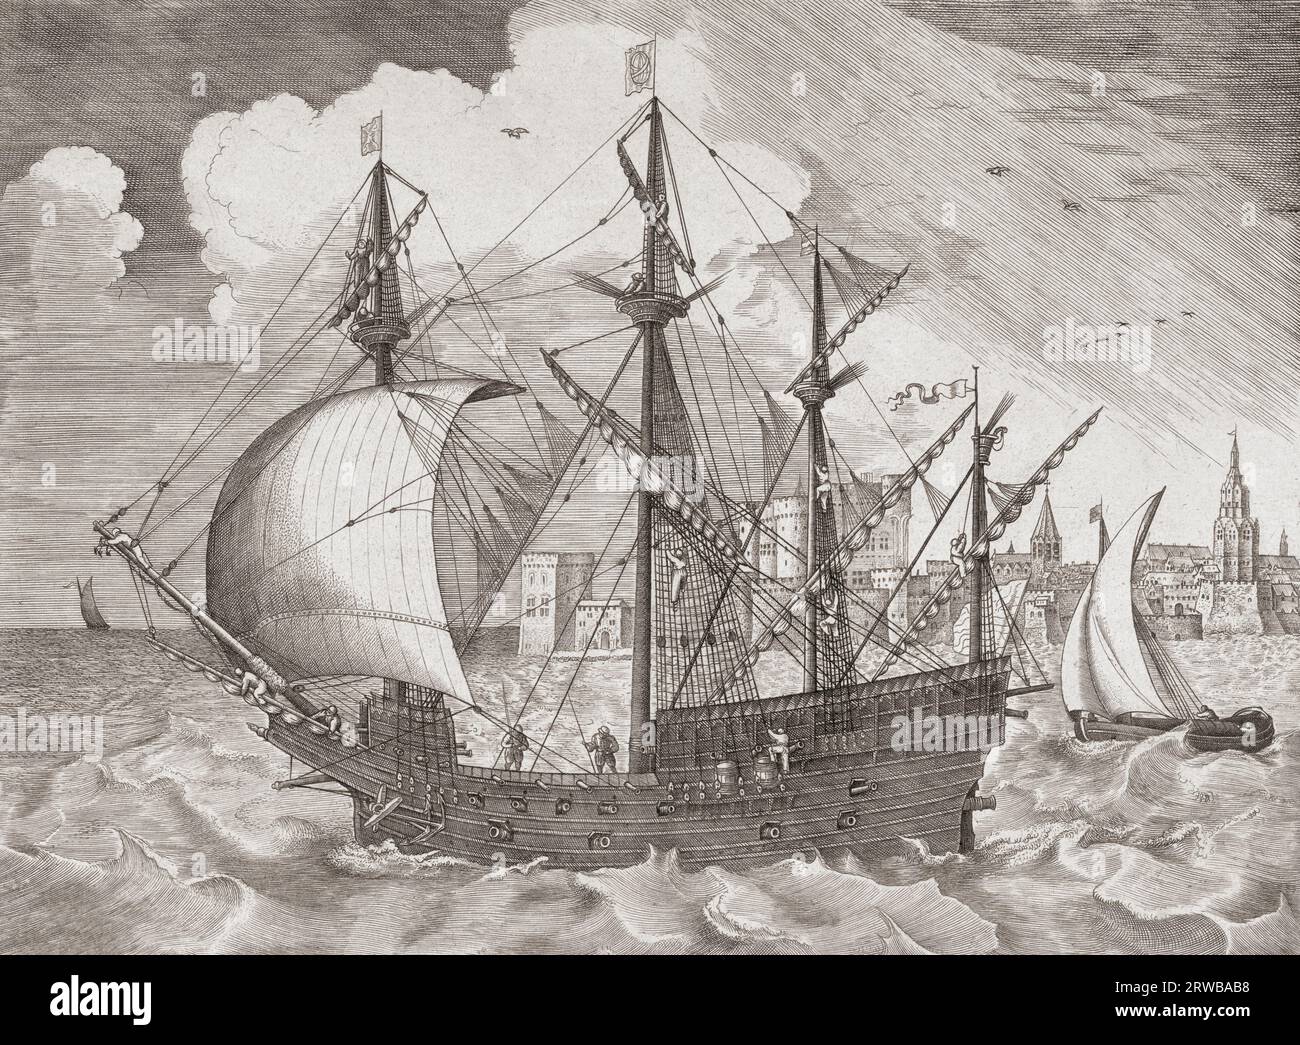 Ein viermastiges Segelschiff verlässt den Hafen. Aus einem Stich von Frans Huys aus dem späten 16. Jahrhundert. Stockfoto